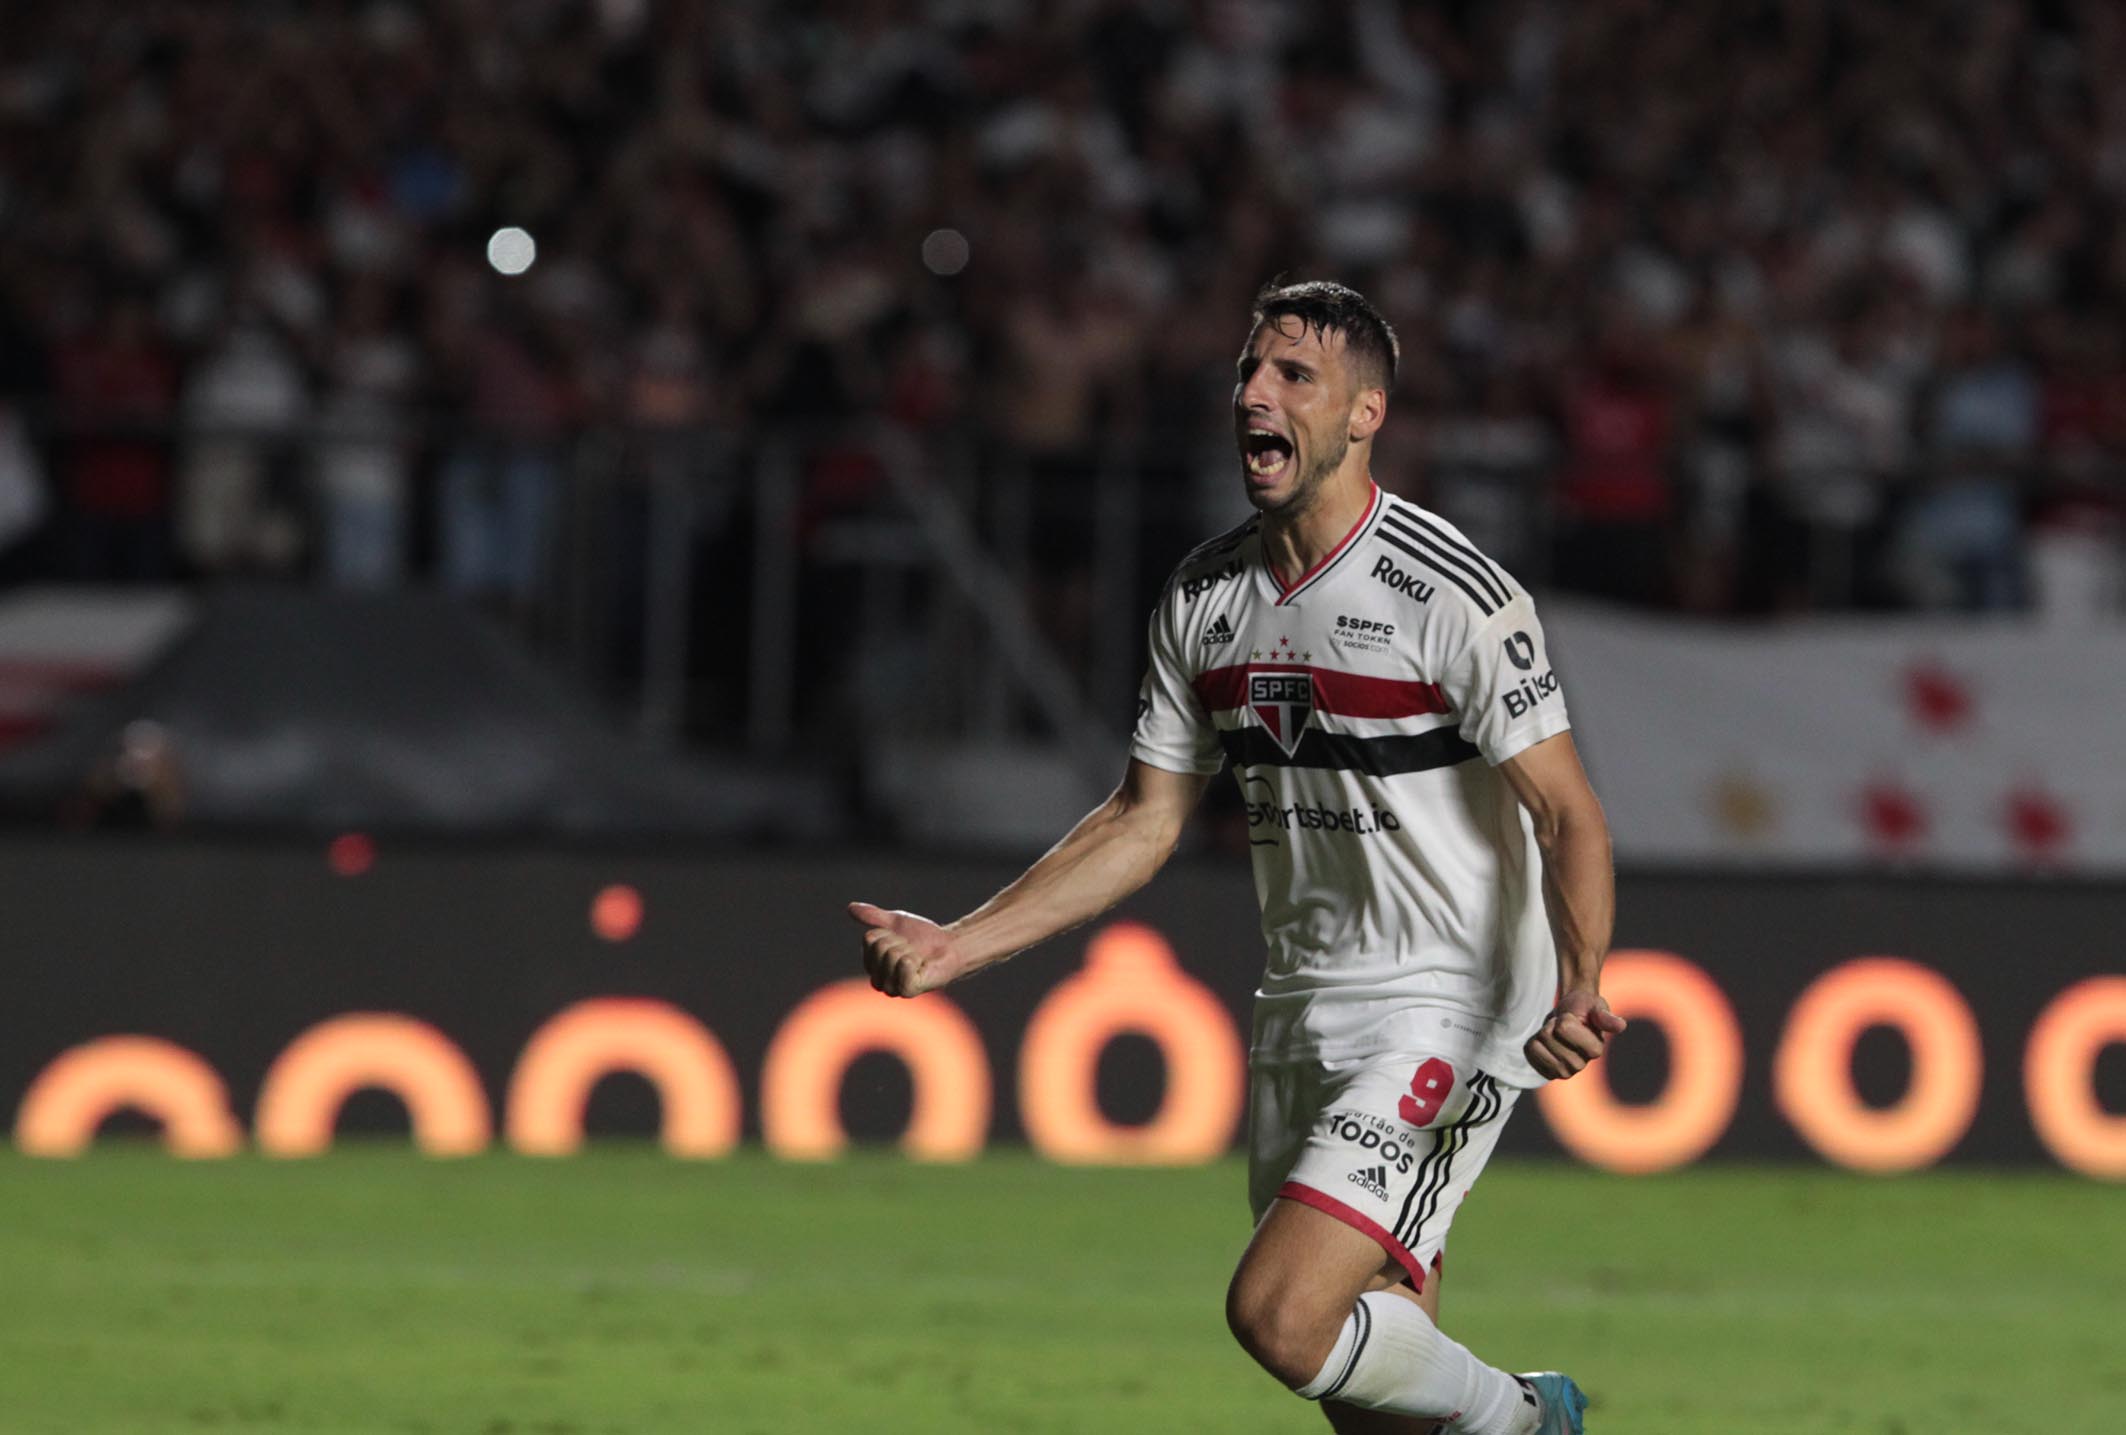 São Paulo abre boa vantagem sobre o Palmeiras na final do Paulista -  Exclusivo! RJ